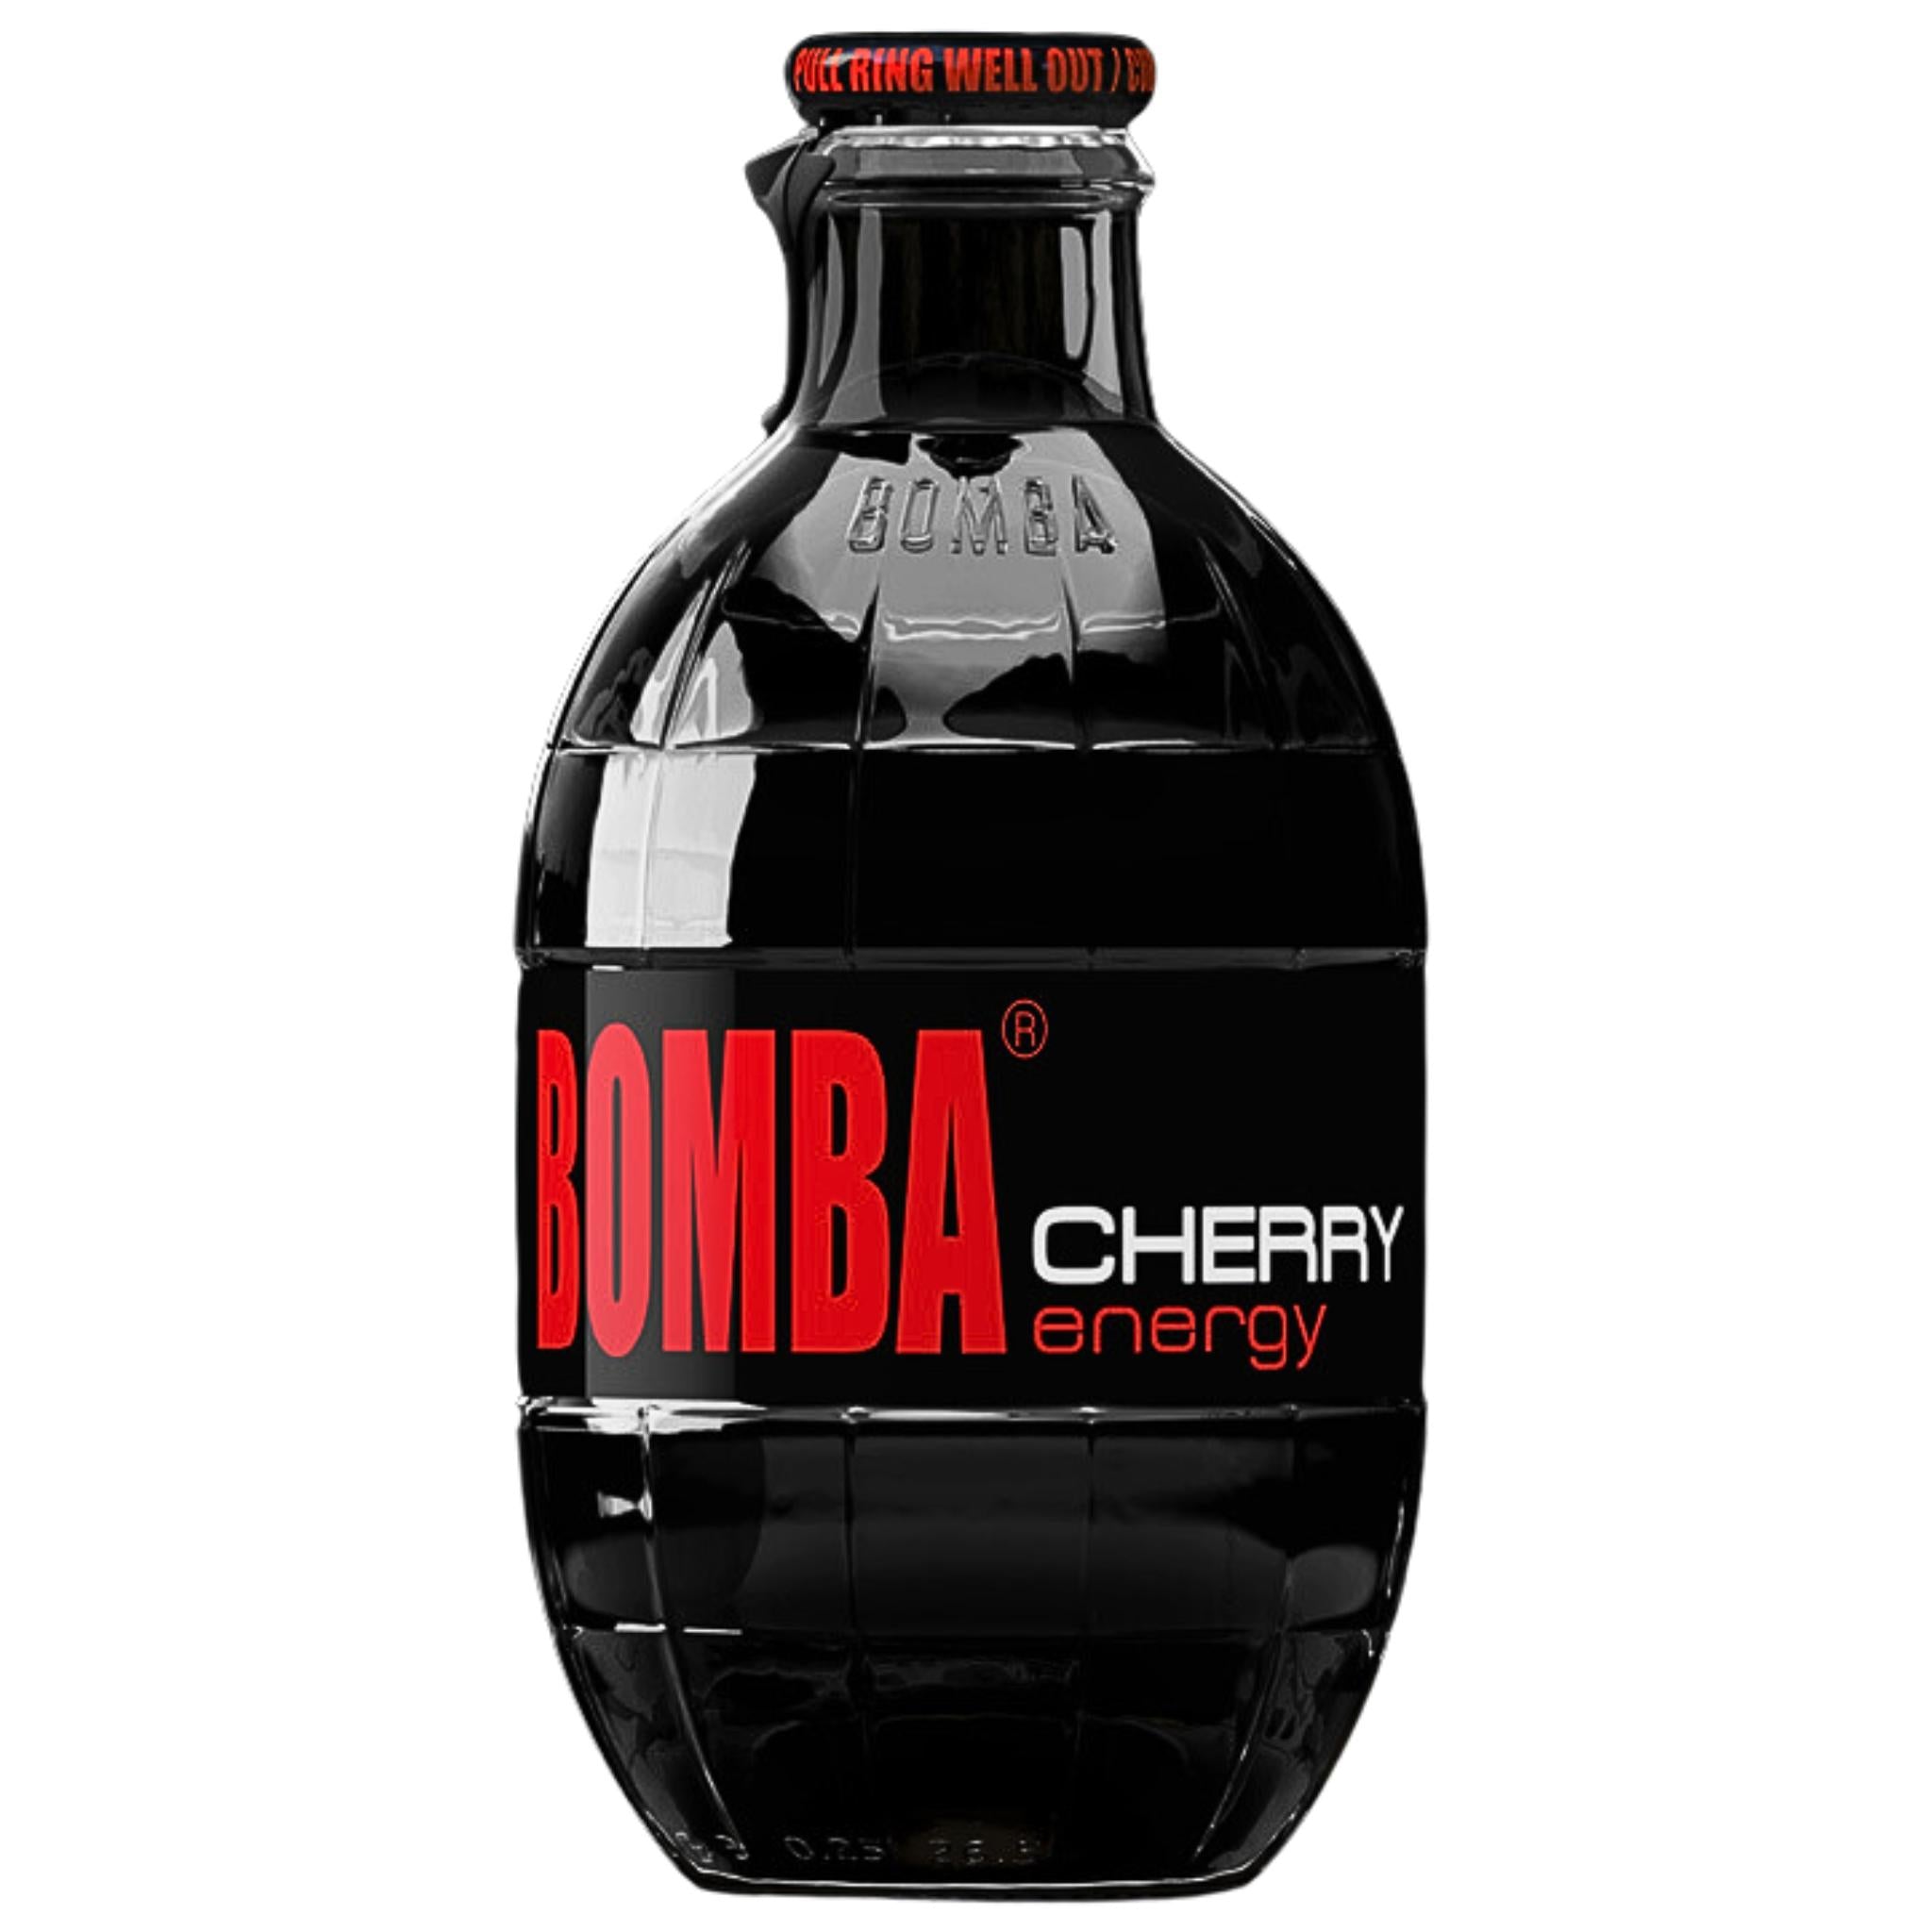 Bomba Cherry Energy - 250ml